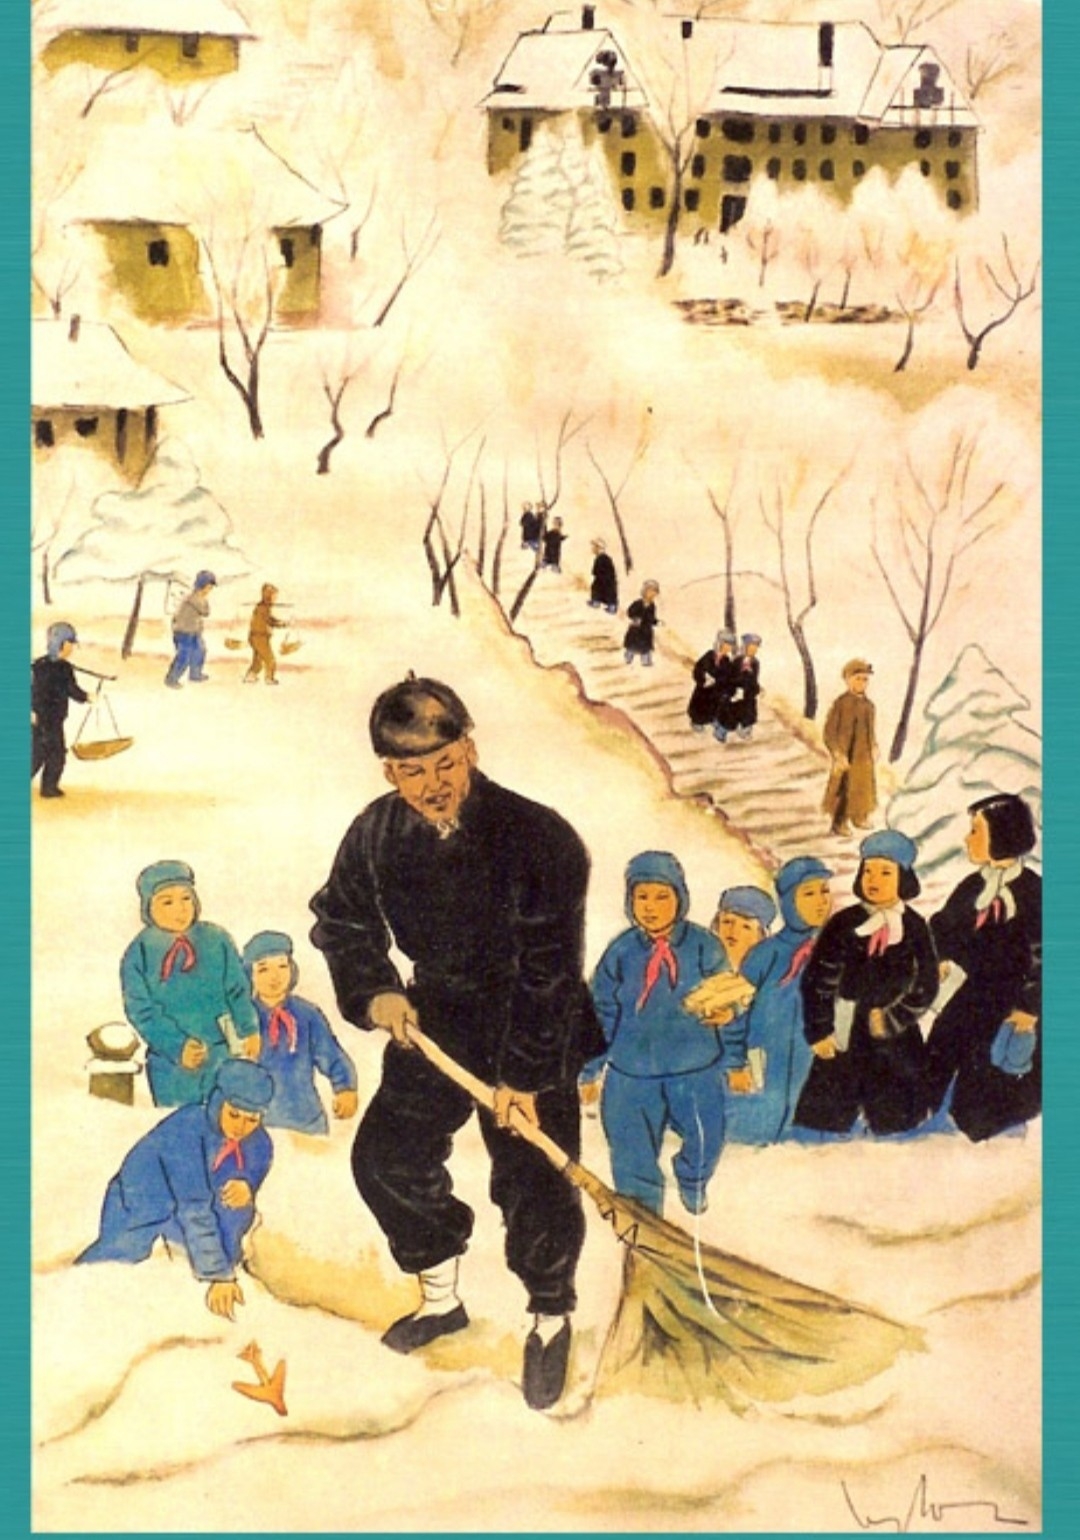 担任绘画老师的艺术家黎原利的一幅名为《扫雪的老人》的画。